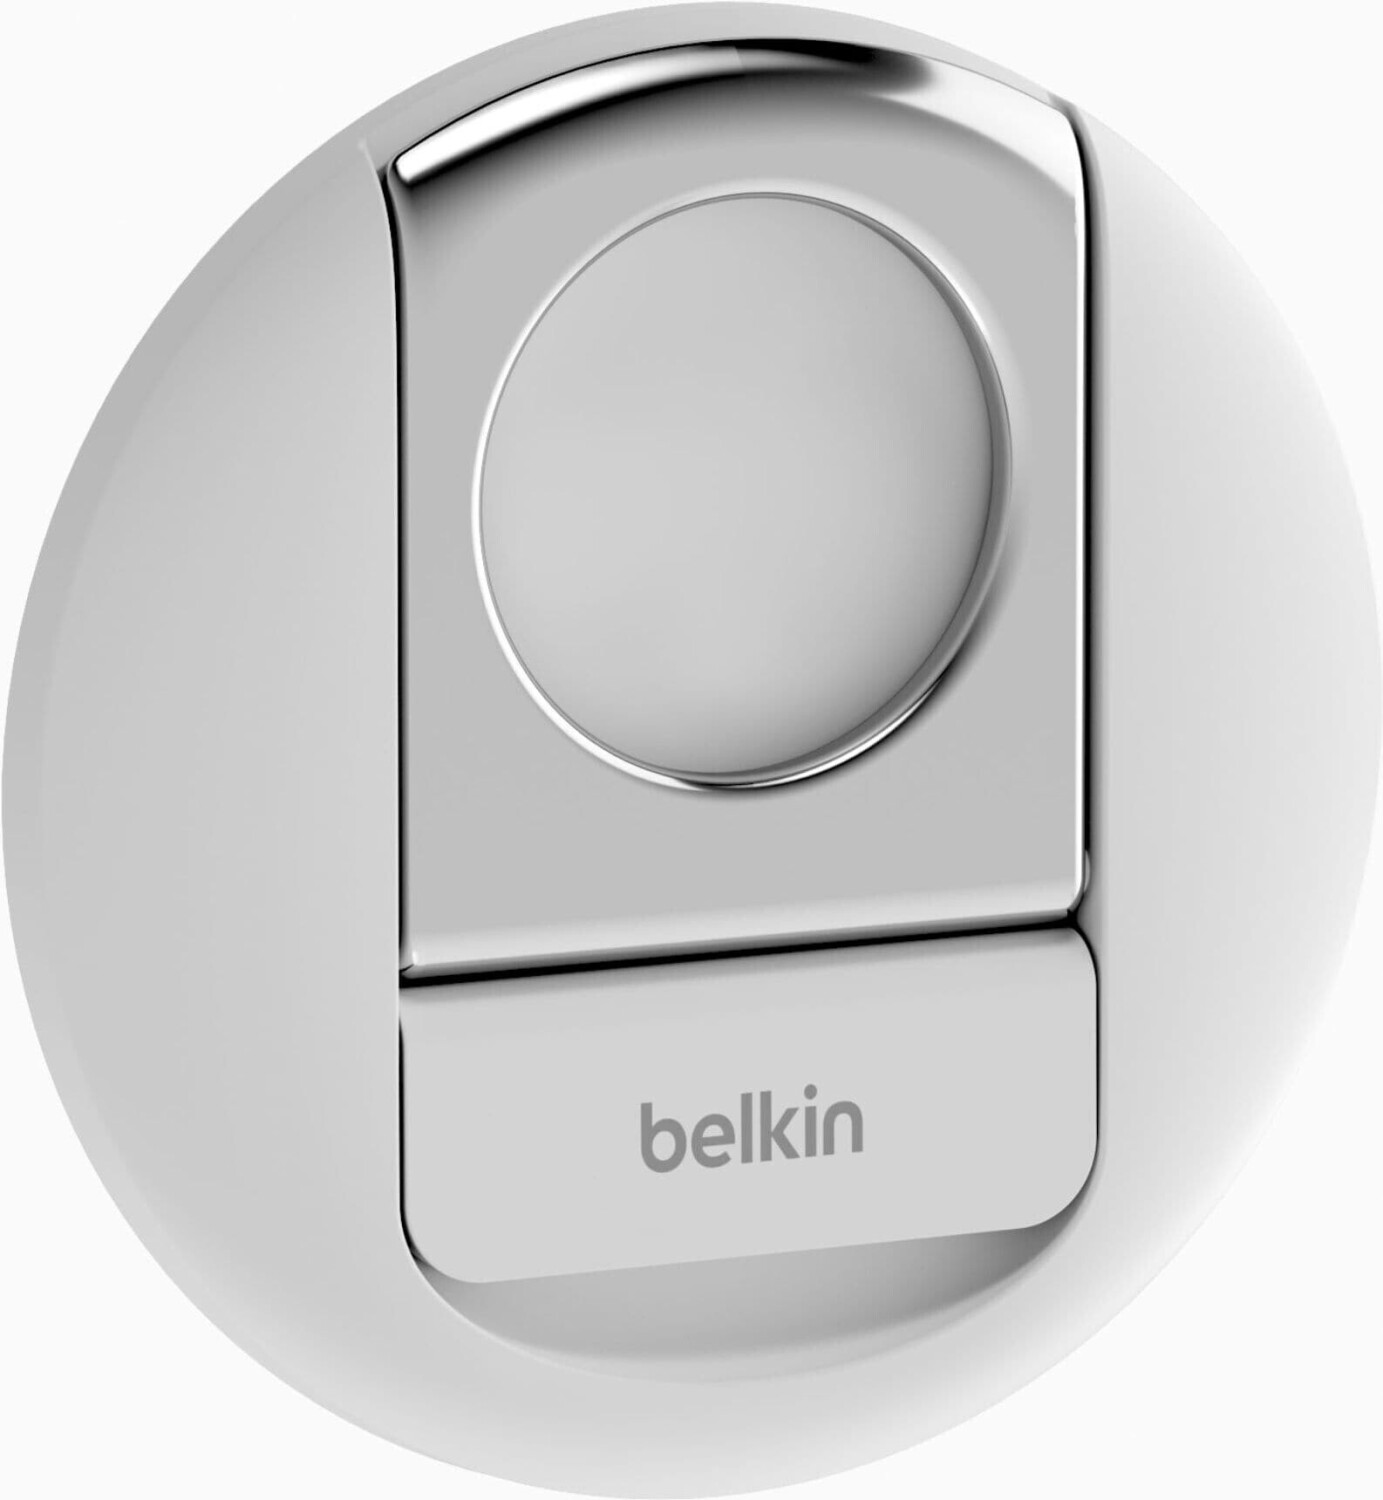 Belkin iPhone Halterung mit MagSafe für Mac Notebooks ab 23,75 €